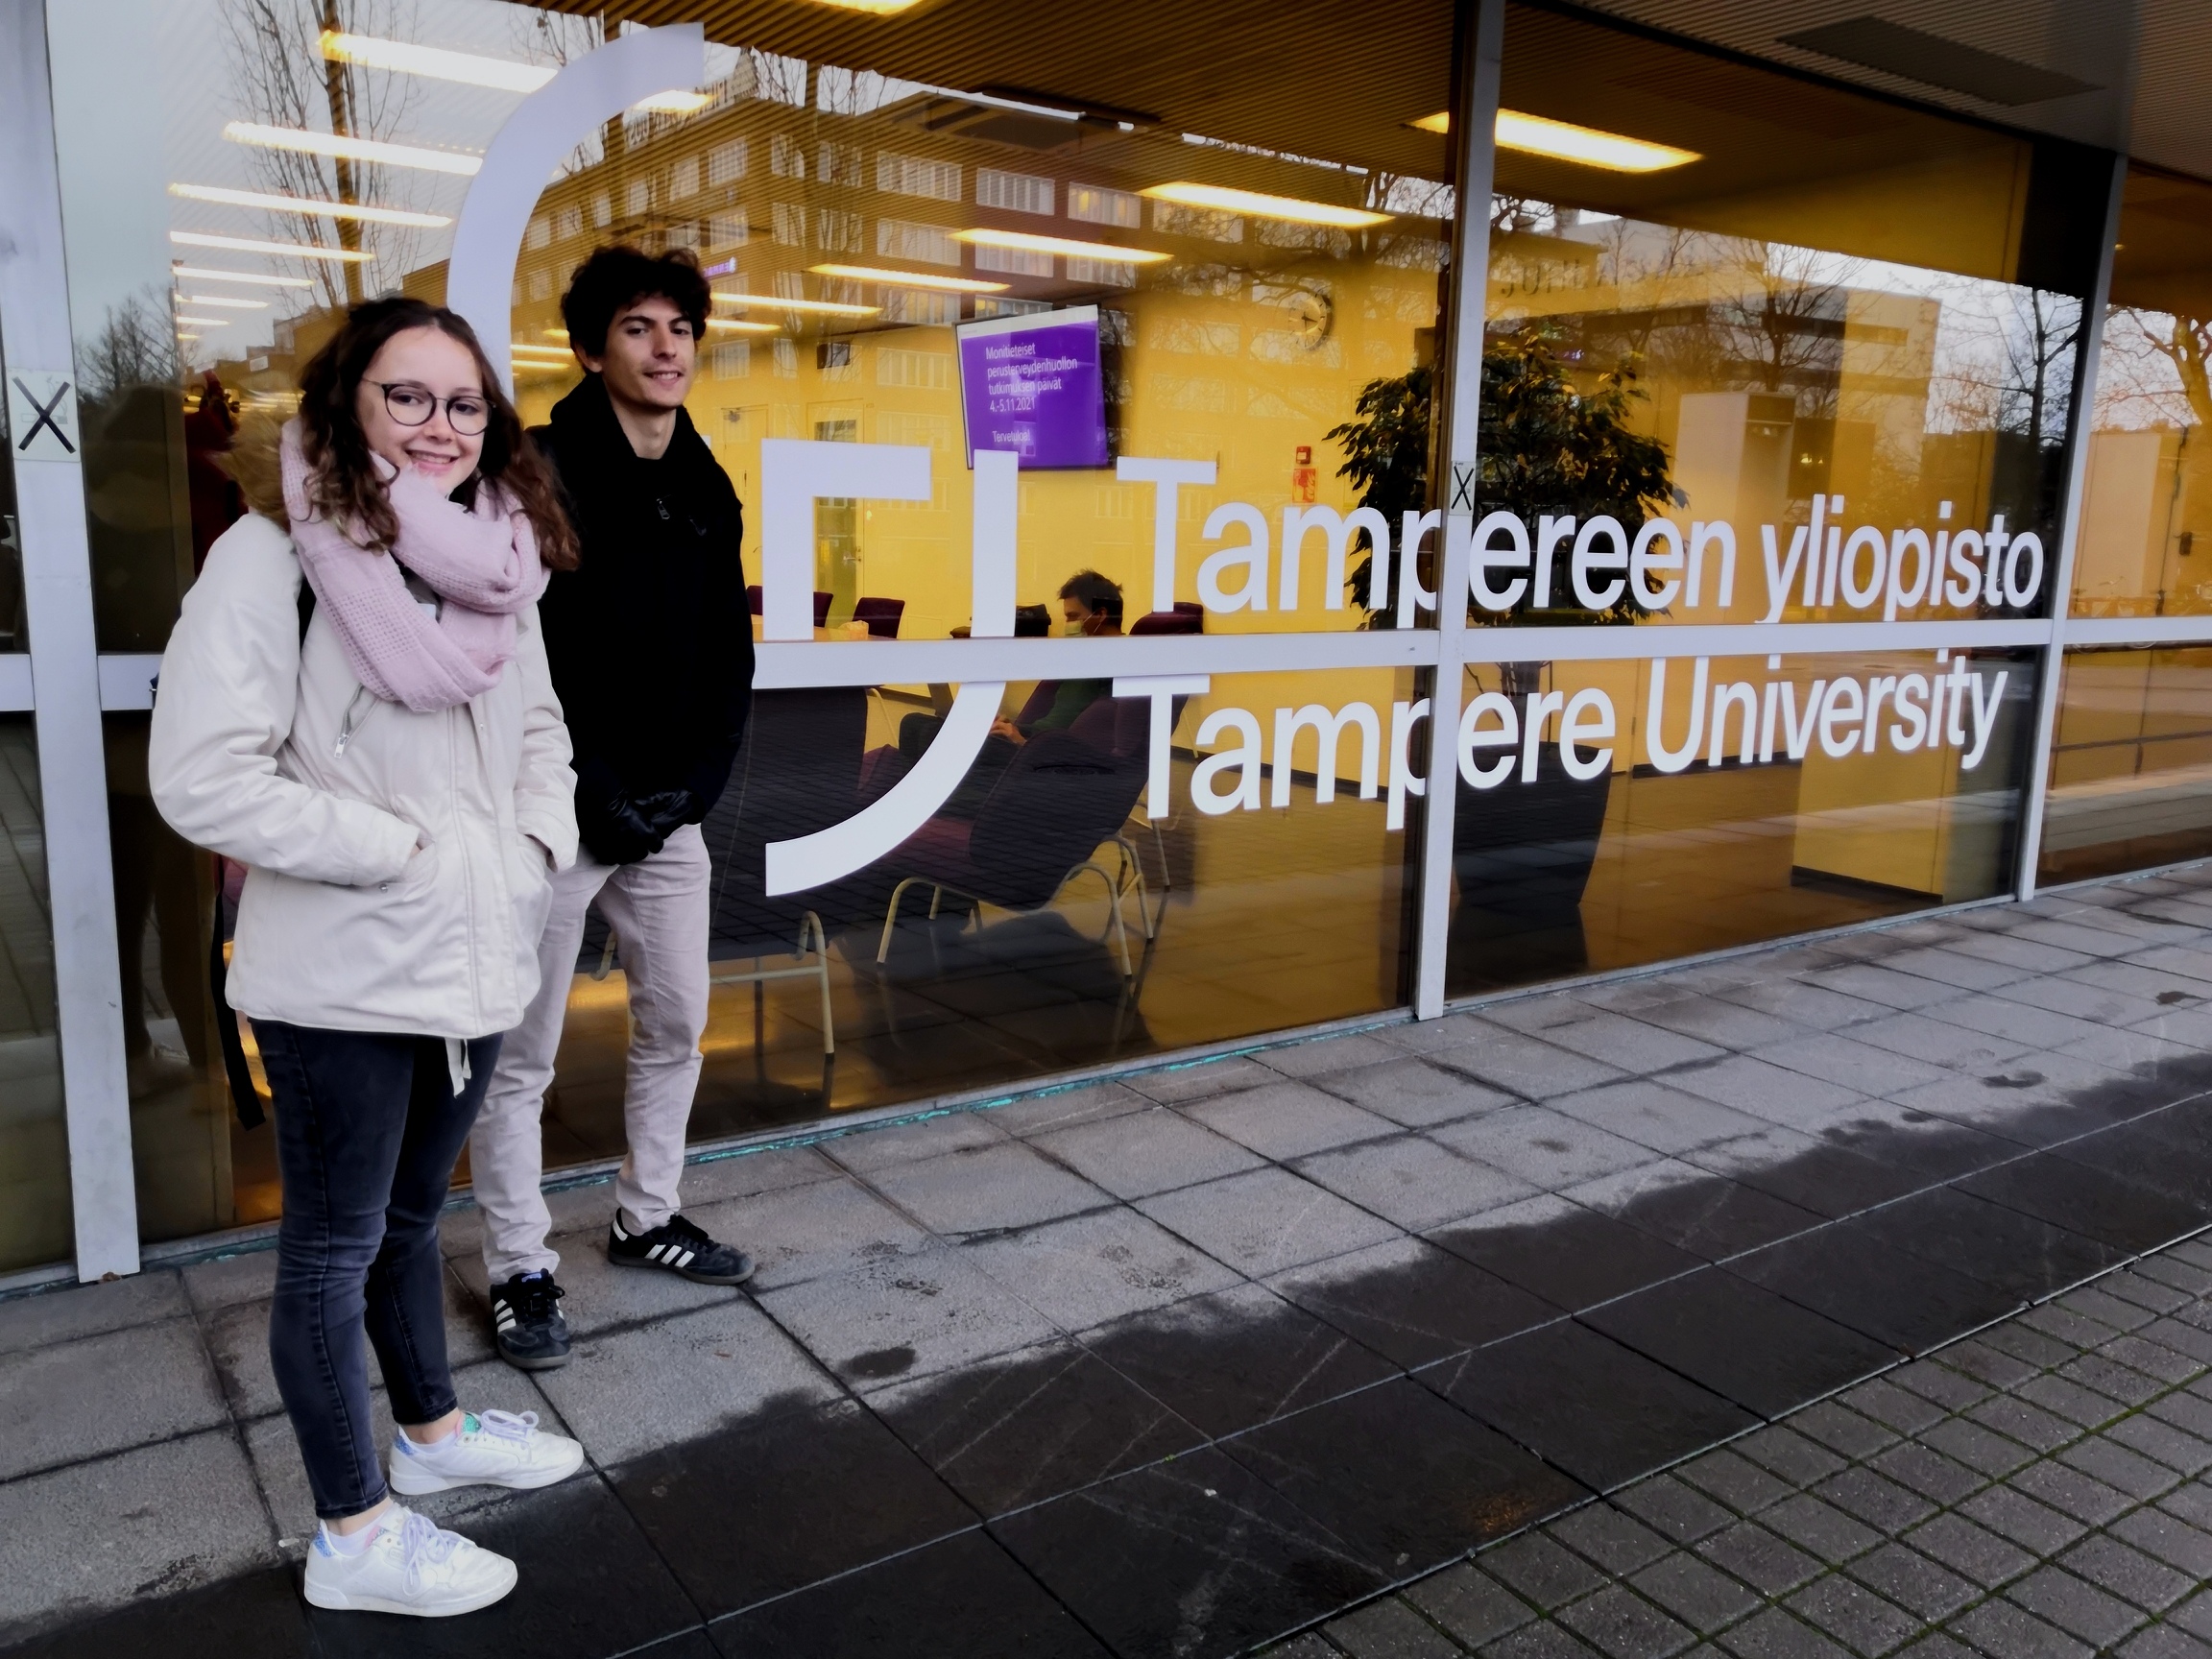 Etudiants de Centrale Marseille devant l'université de Tampere